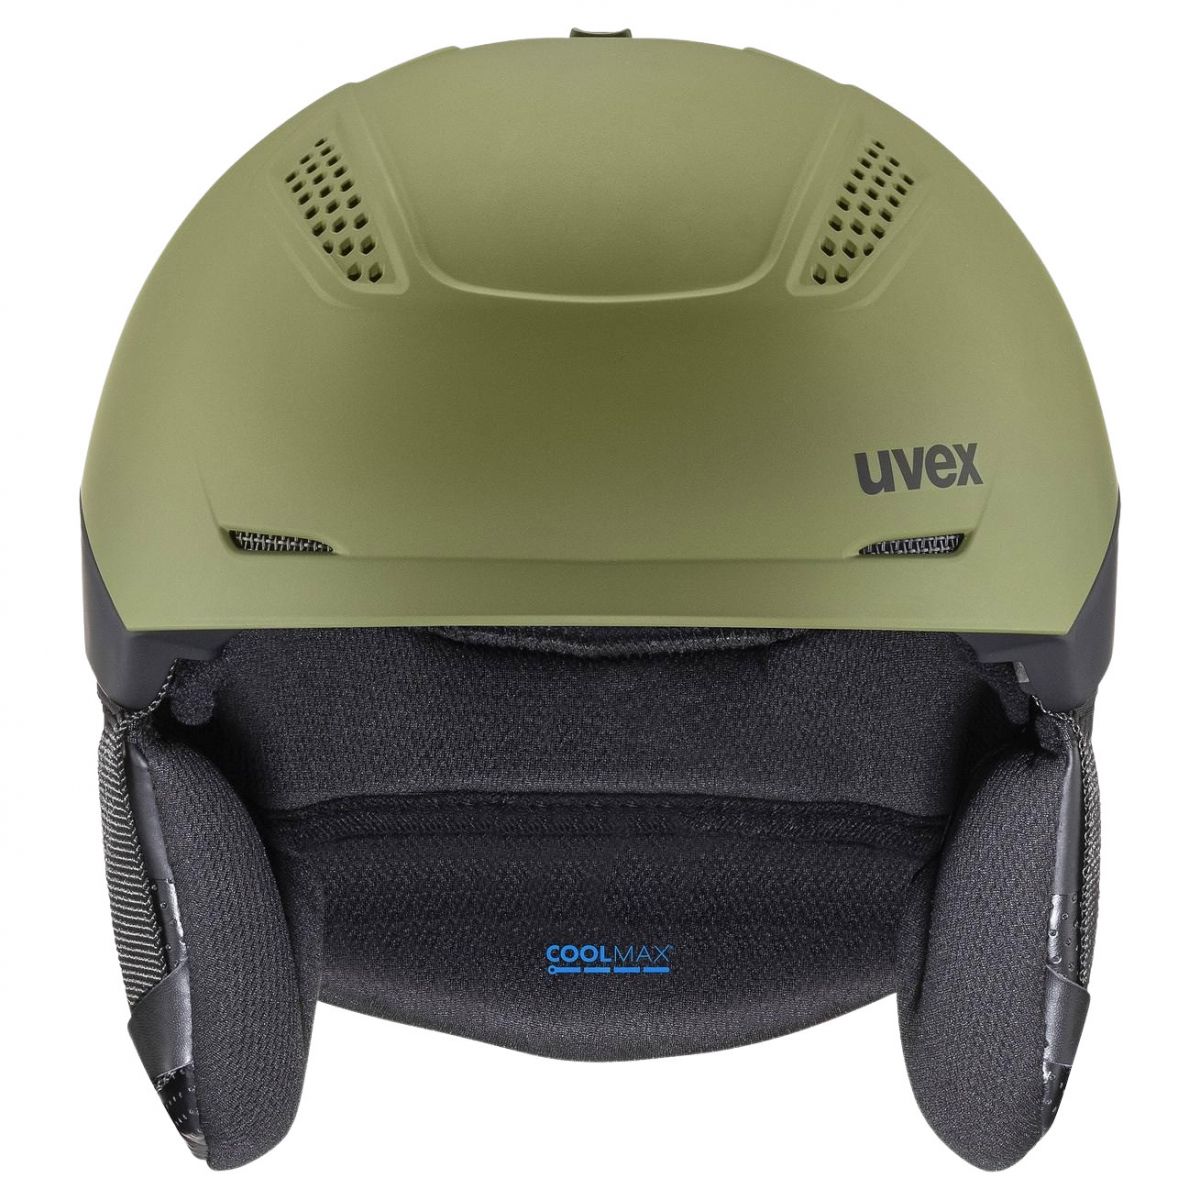 Uvex Ultra Pro, hiihtokypärä, vihreä/musta